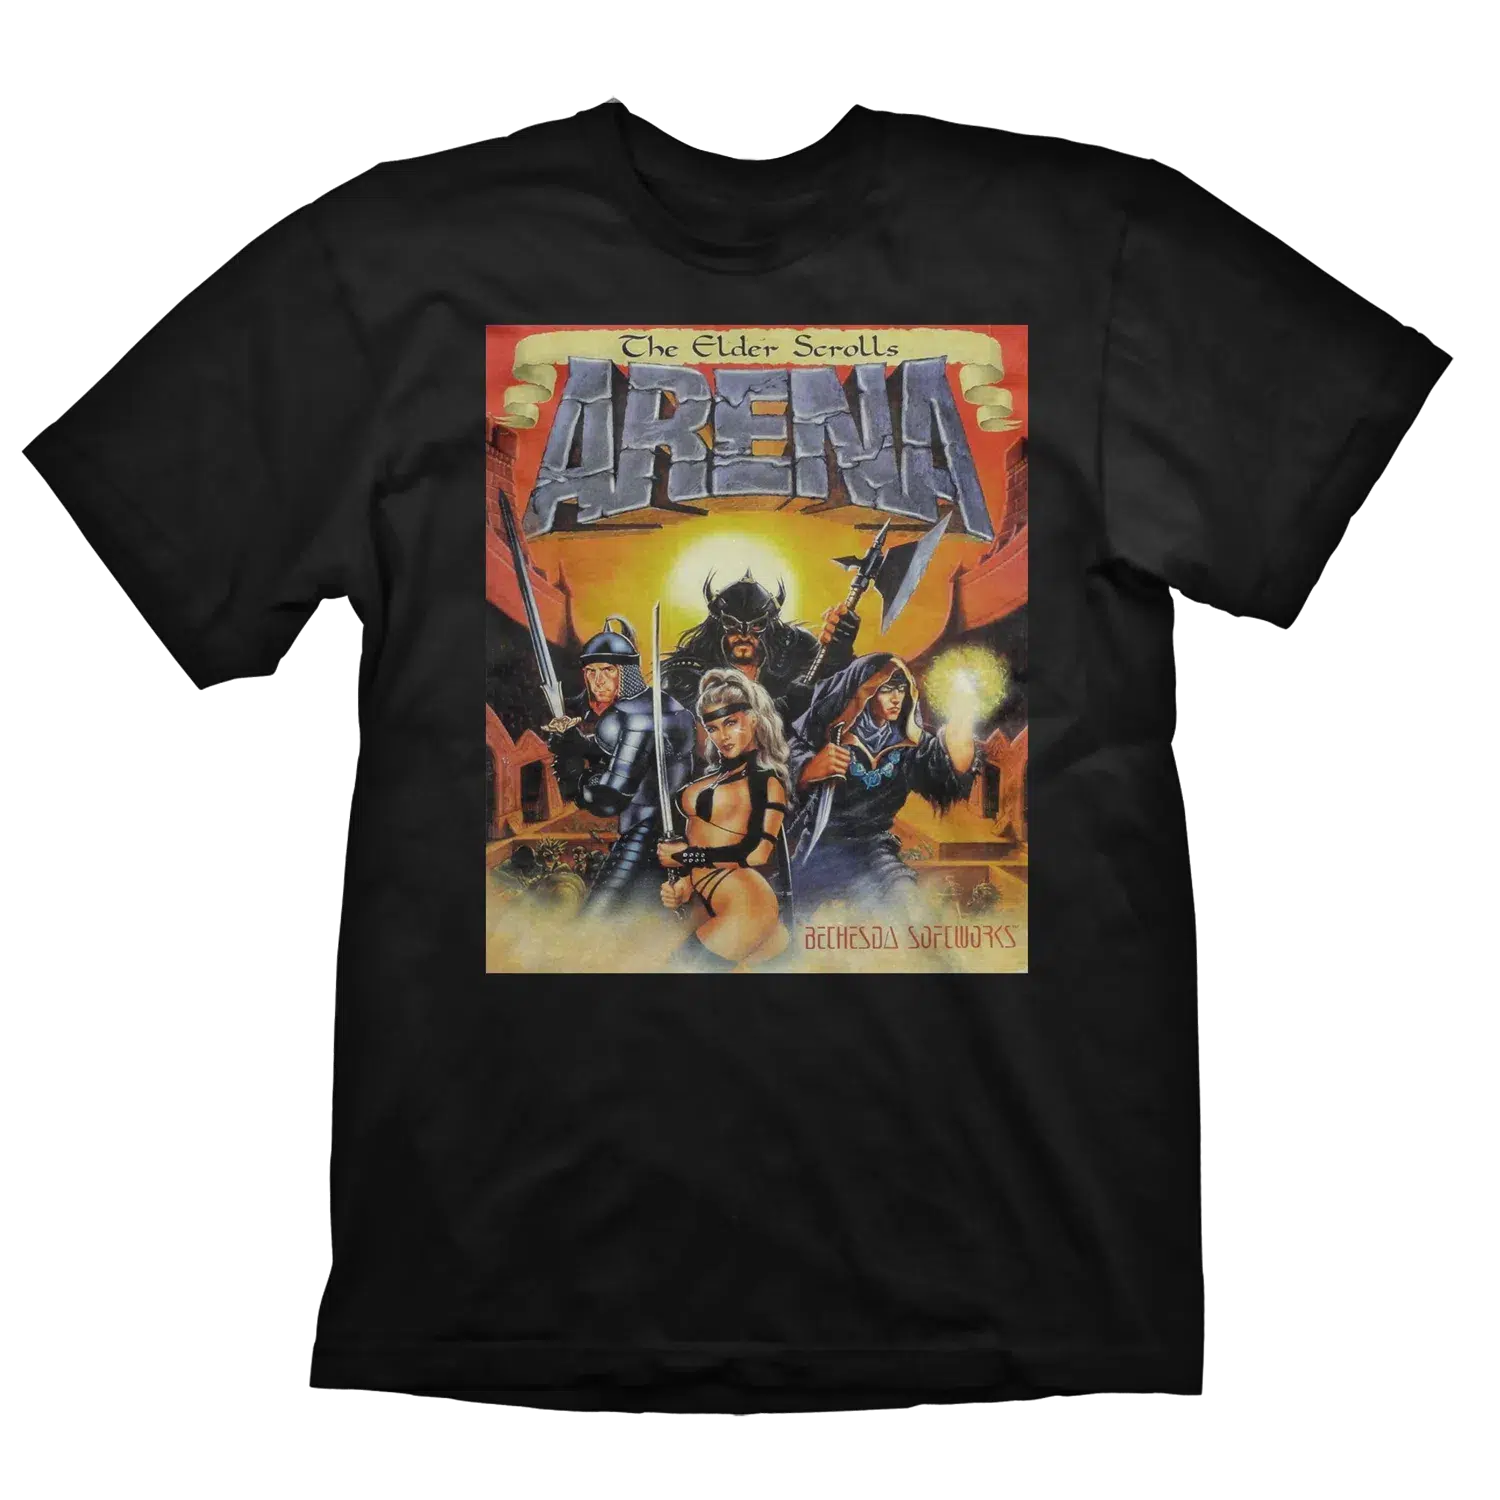 The Elder Scrolls T-Shirt Vintage Arena M